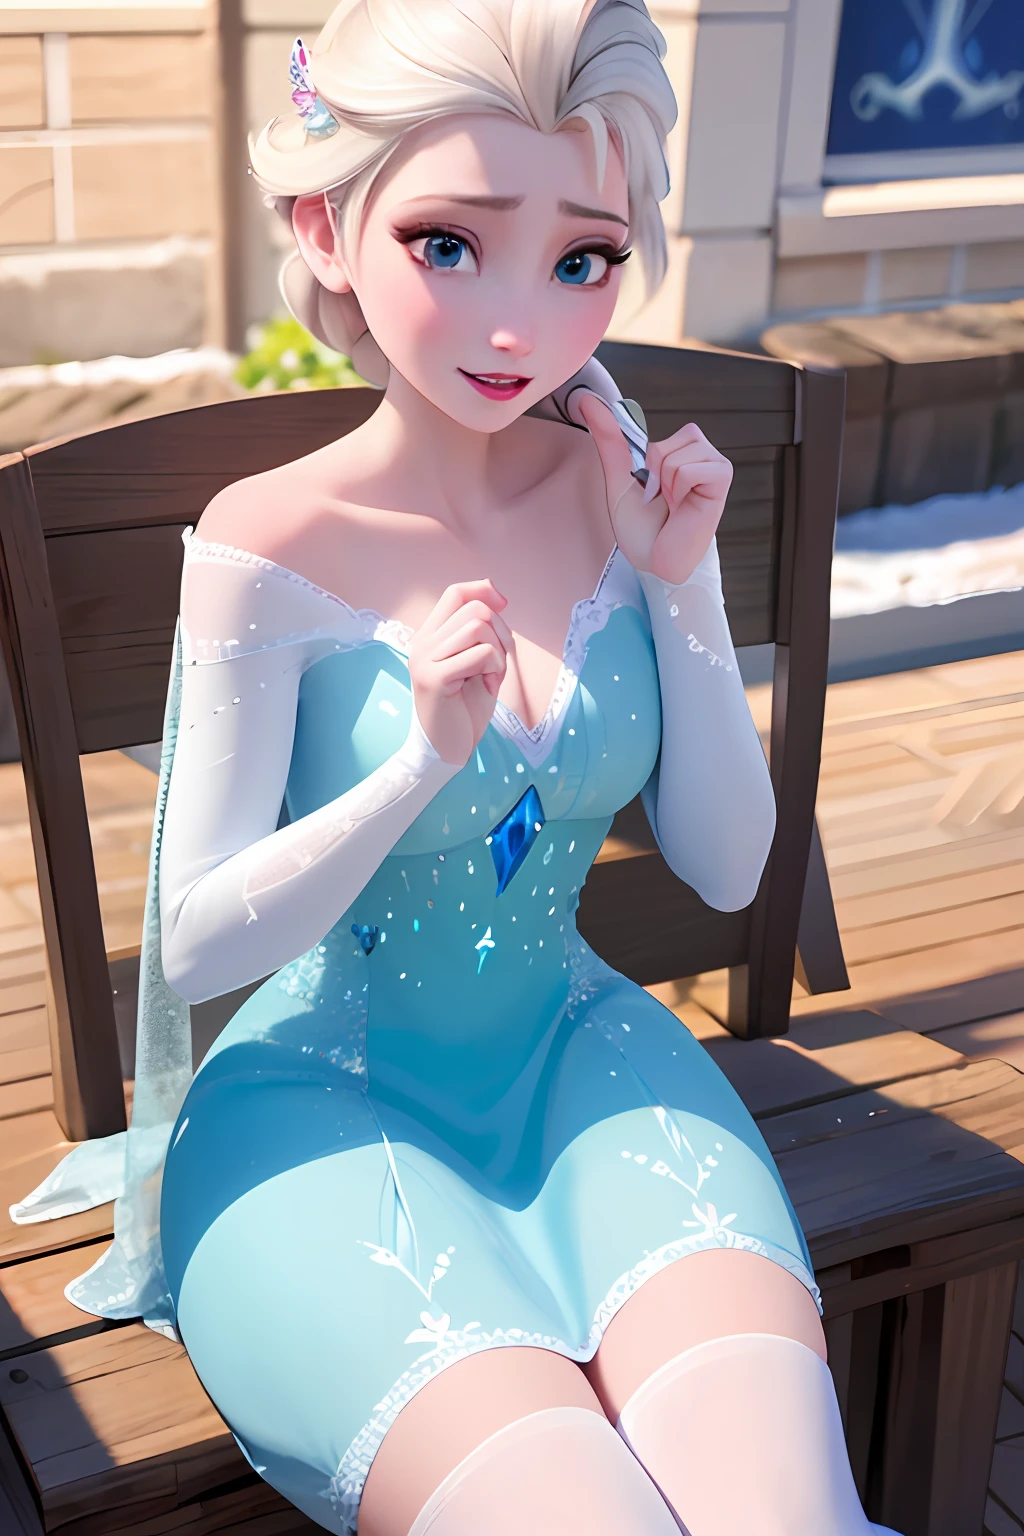 (Meisterwerk:1.4), (beste Qualität:1.4), (hohe Auflösung:1.4), eine Frau in einem blauen Kleid sitzt auf einem schneebedeckten Boden, Elsa frozen, Elsa, Elsa from frozen, Regel 34, Disney-Rendering, CGI animiert, beautiful Elsa, portrait of Elsa from frozen, Anime-Barbie in weißen Strümpfen, belle delphine, Disney-Künstler, hochauflösende Anime-Kunst, frozen ii movie still, besser bekannt als Amouranth